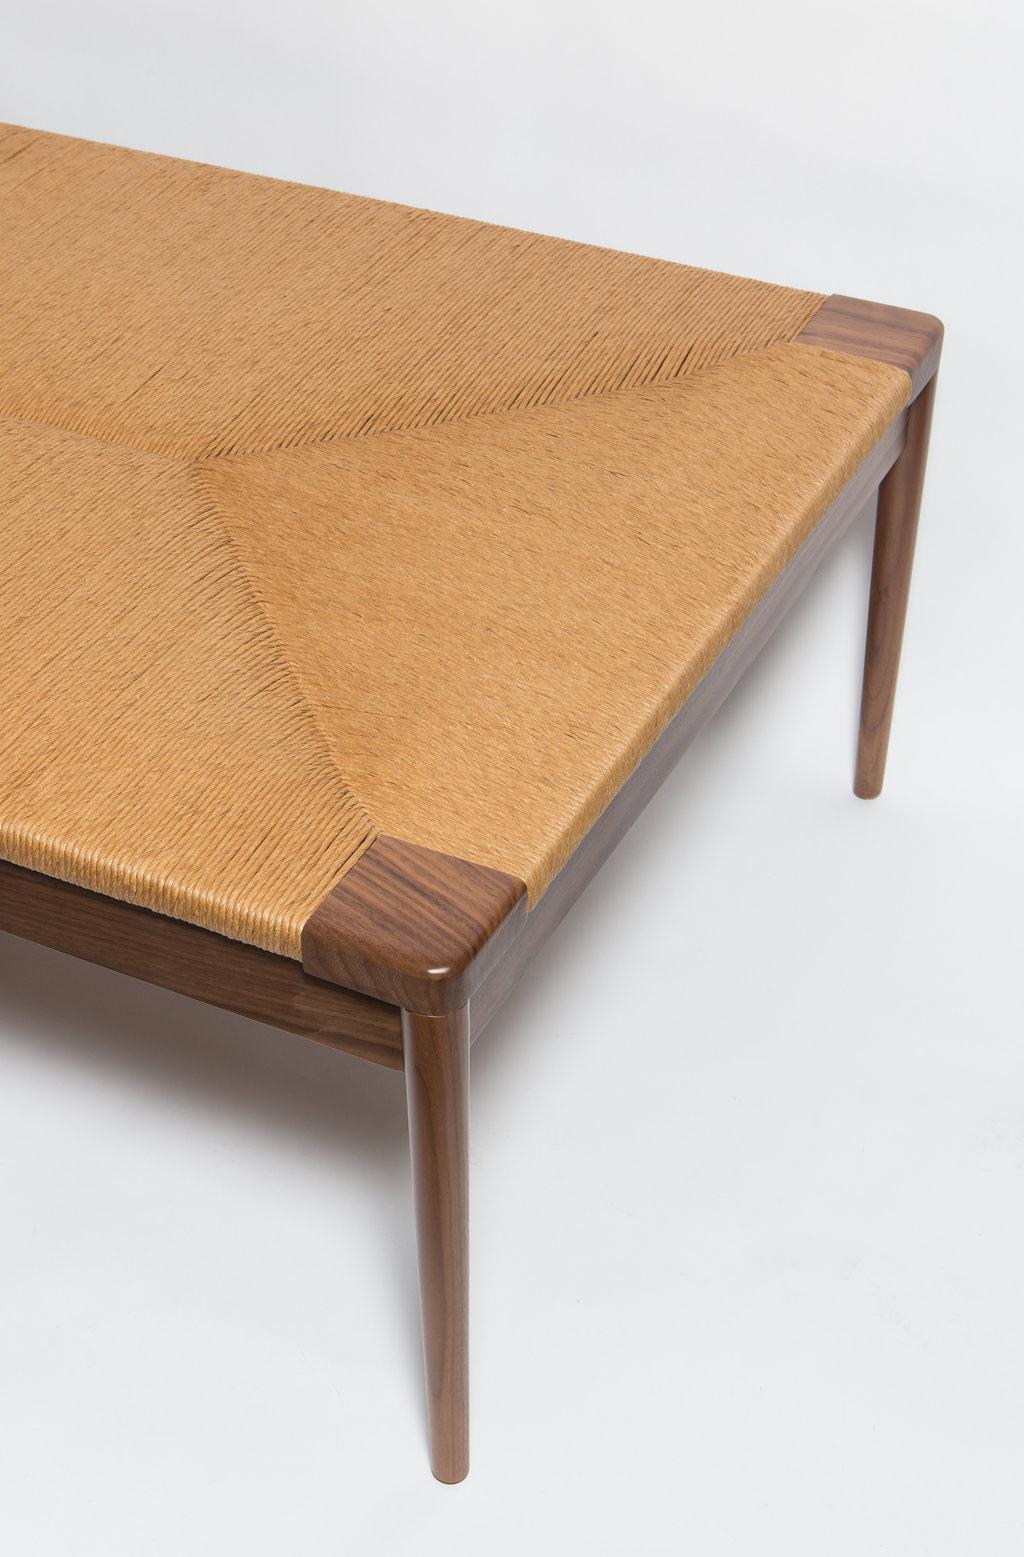 Das Woven Rush Day Bed, entworfen von Judy Smilow im Jahr 2014, ist eine moderne Ergänzung der Woven Rush Collection'S von Mel Smilow. 

Massive Walnussholzliege mit handgeflochtenem Binsen-Sitz. 
Maße: 75